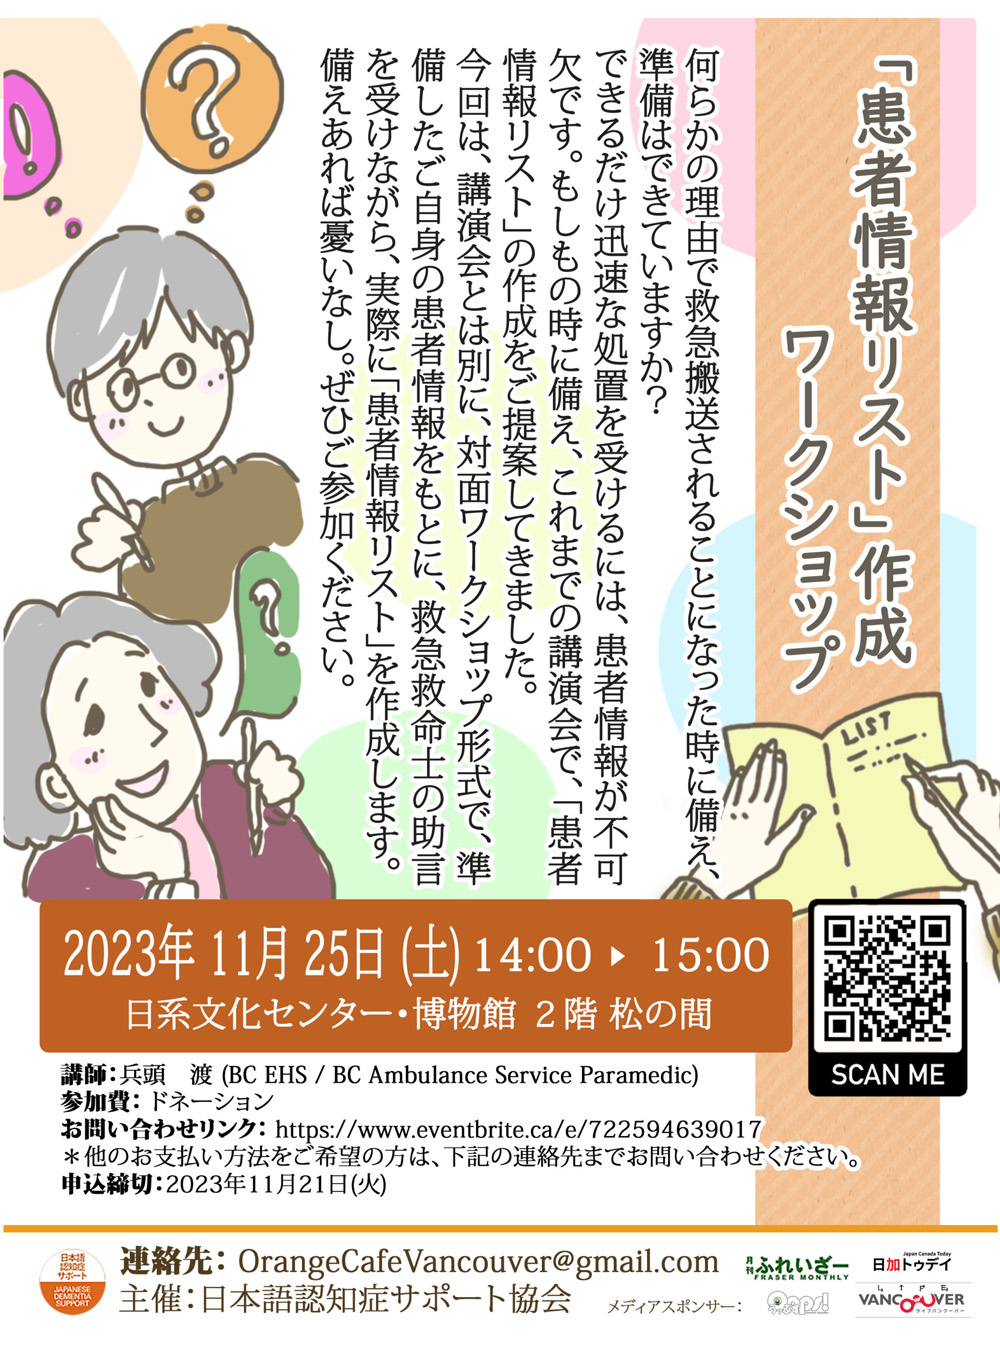 日本語認知症サポート協会, イベント